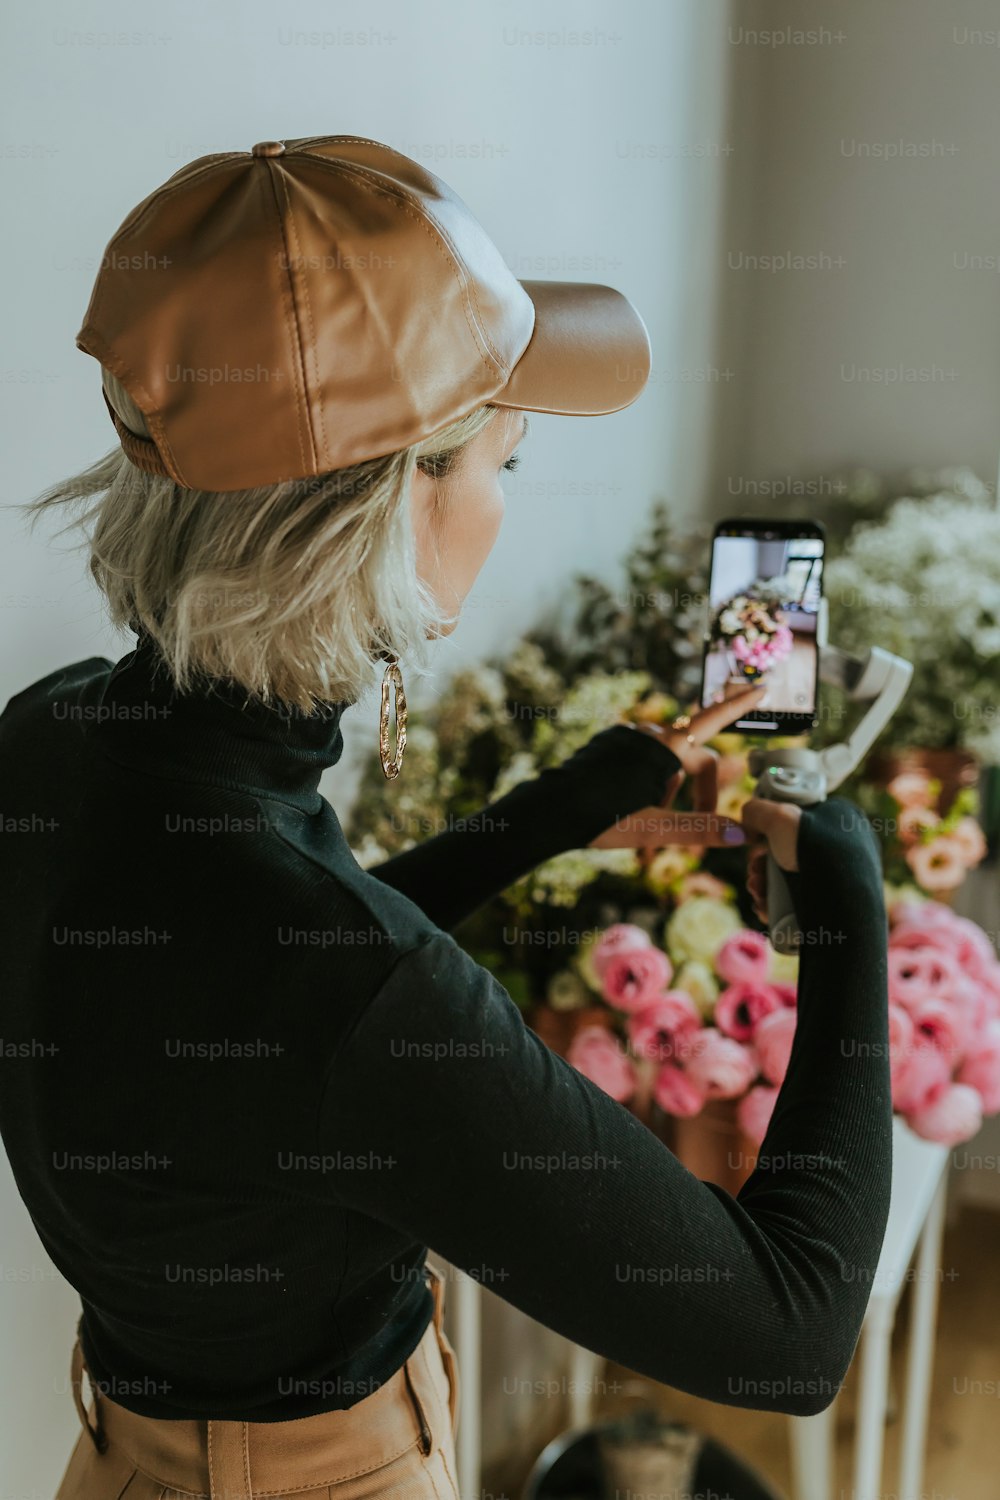 Una mujer tomando una foto de flores con su teléfono celular